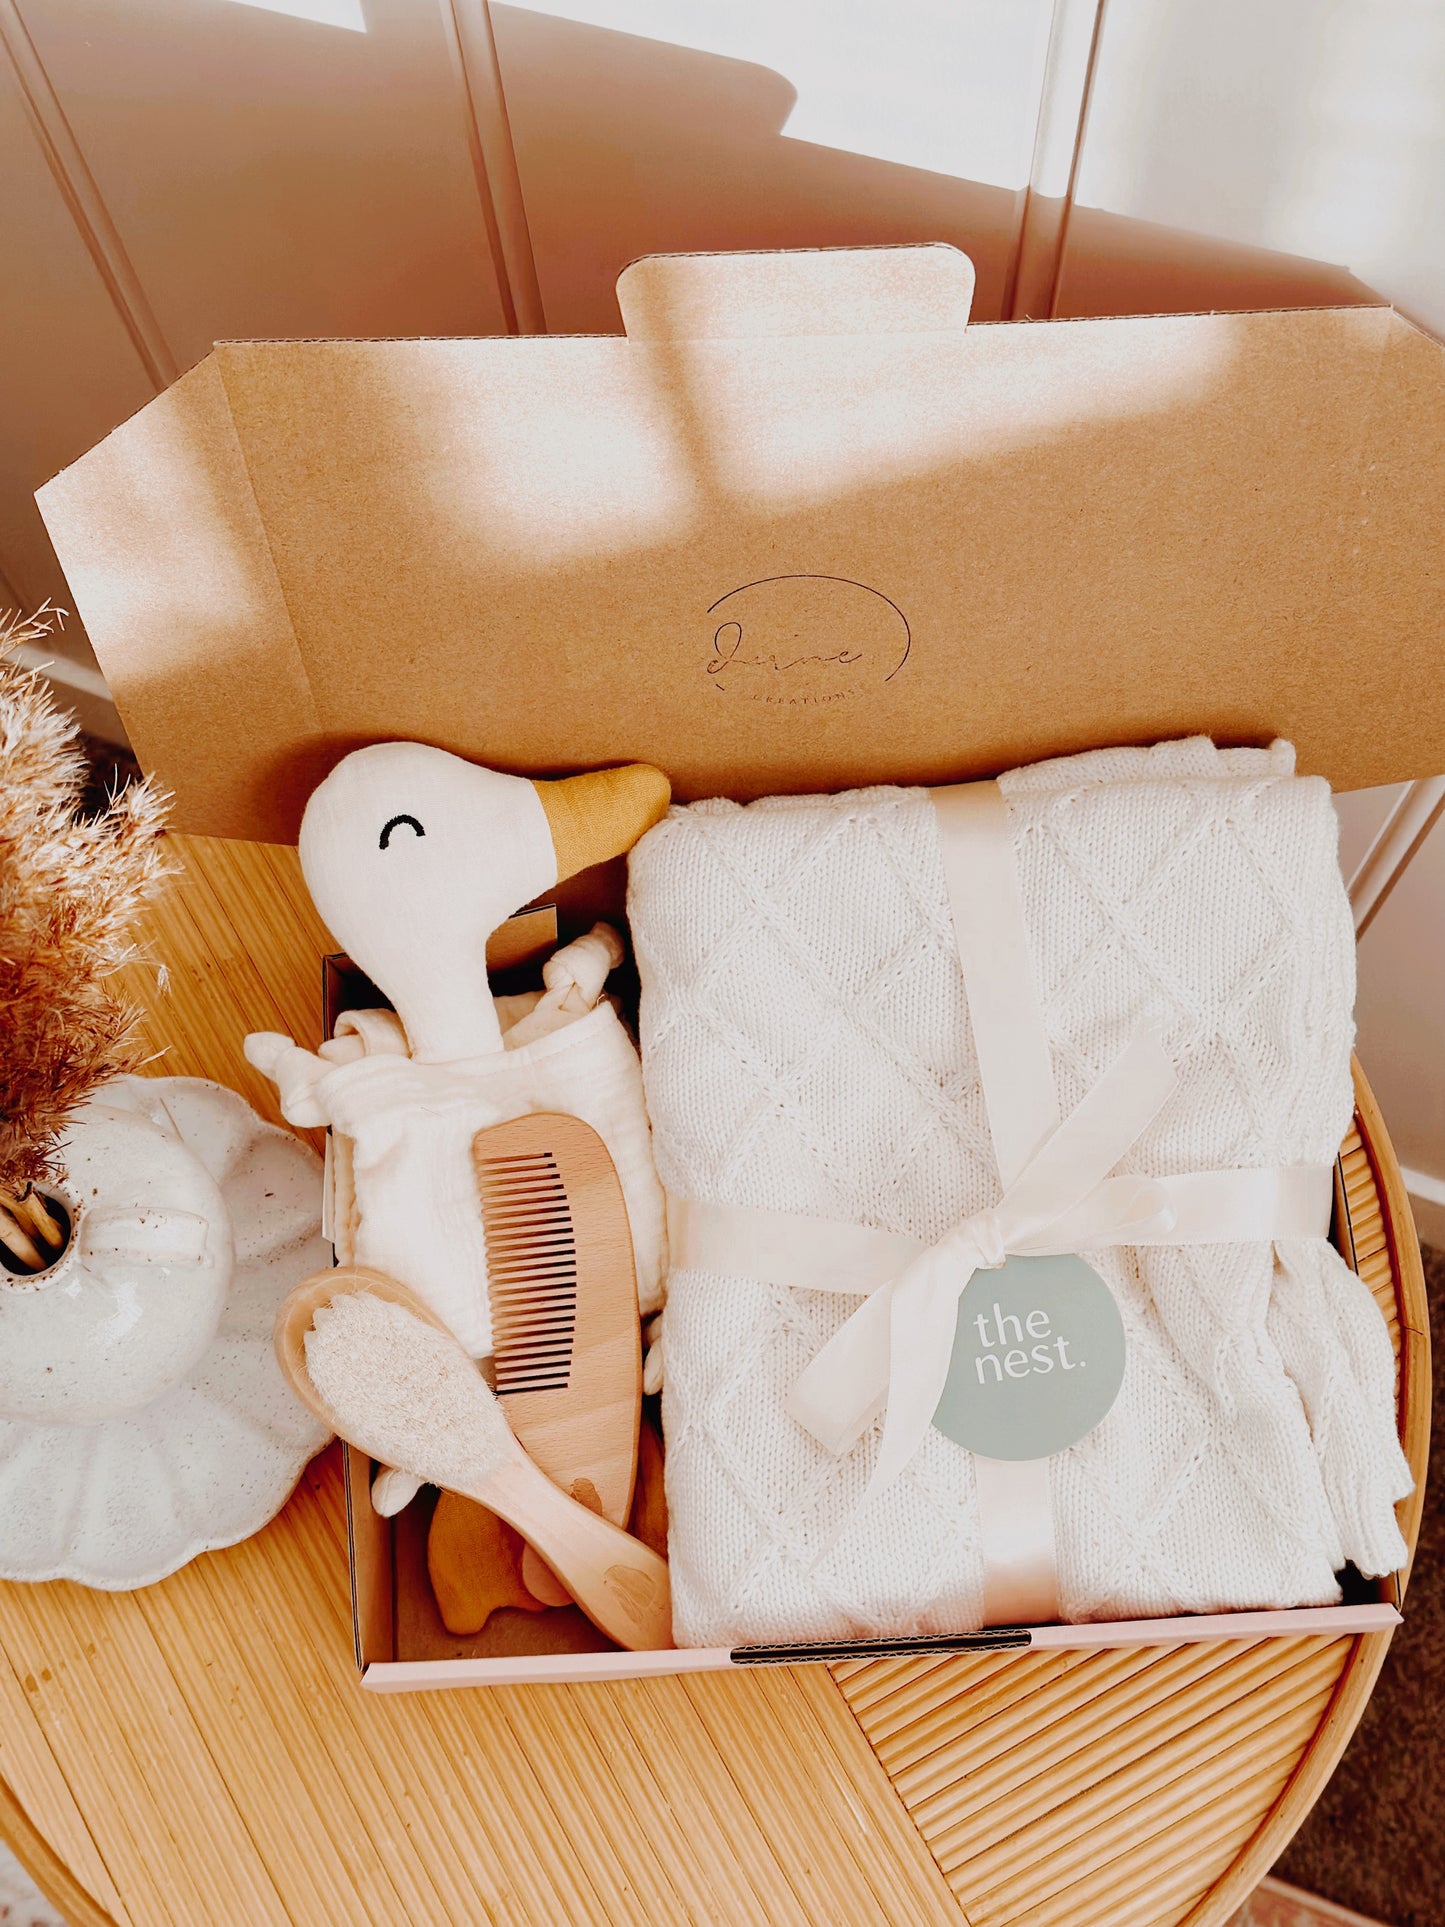 newborn gift box for baby shower